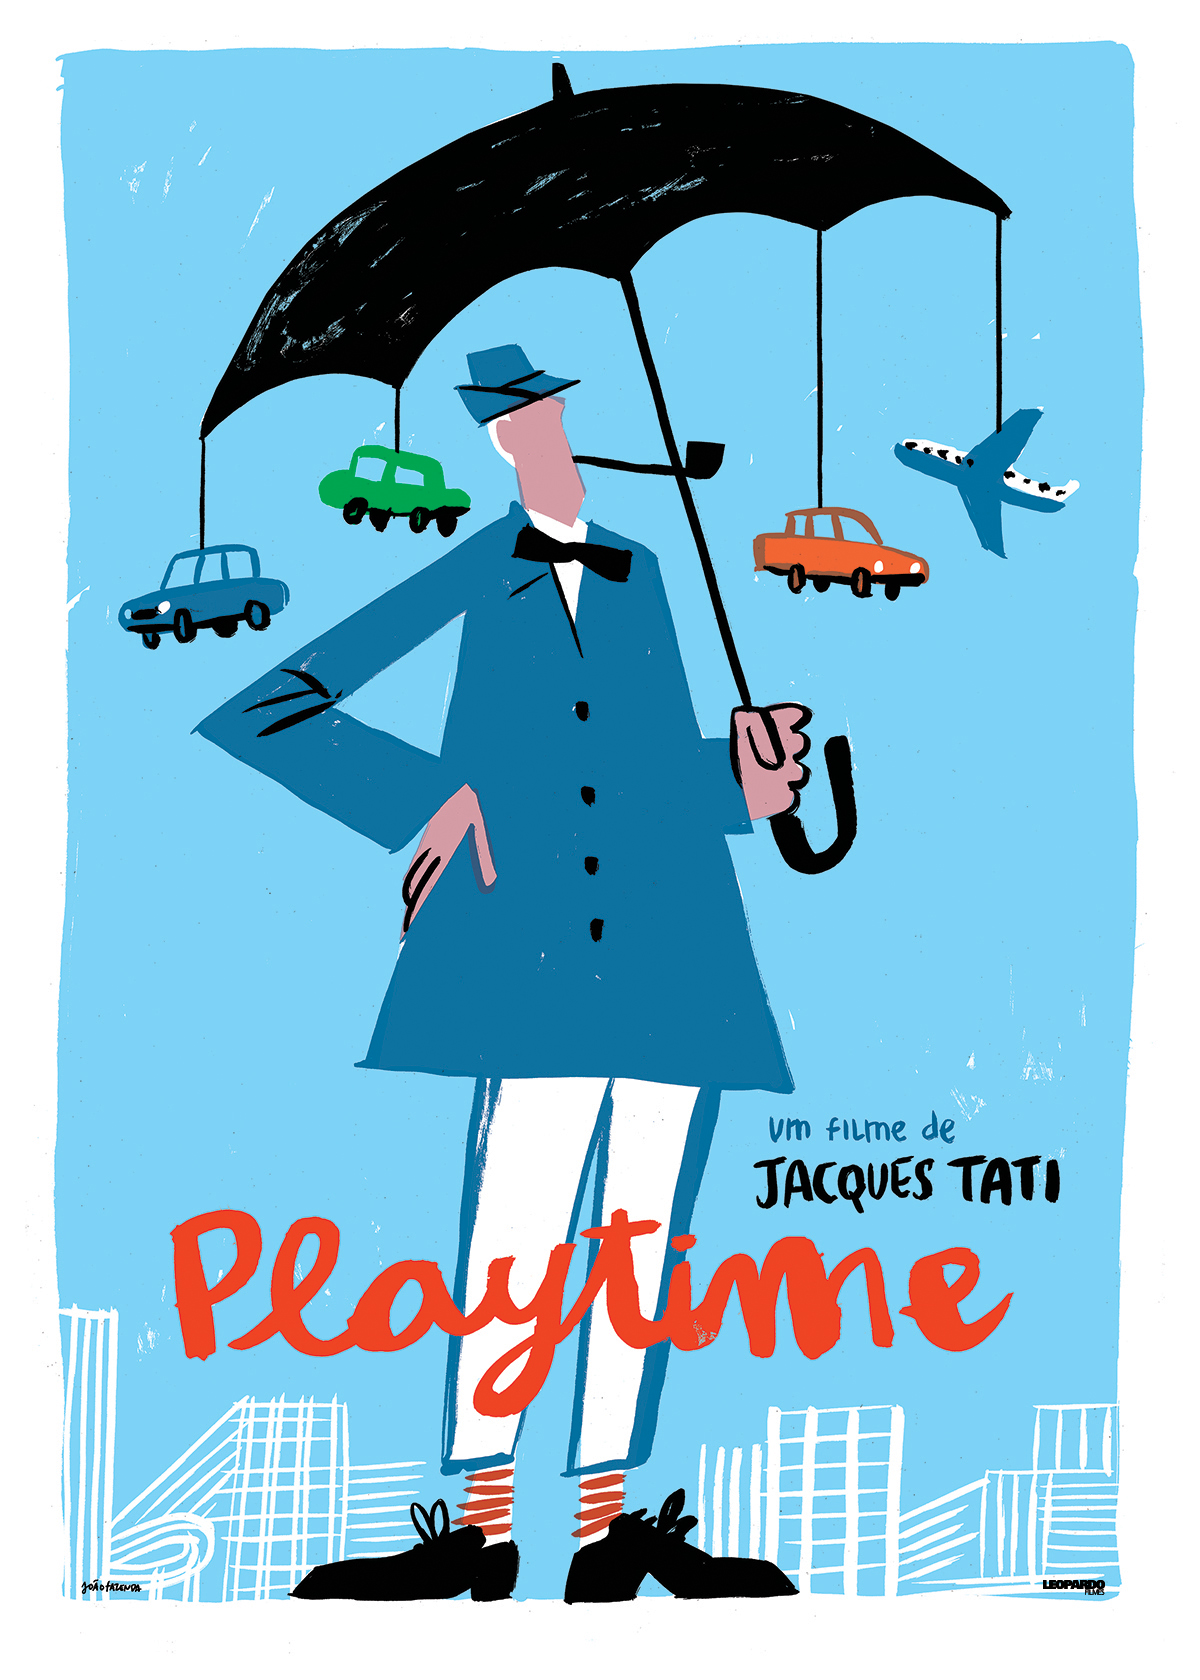 Время развлечений. Жак Тати Playtime. Жак Тати время развлечений Постер. Время развлечений (1967) Постер Жак Тати.